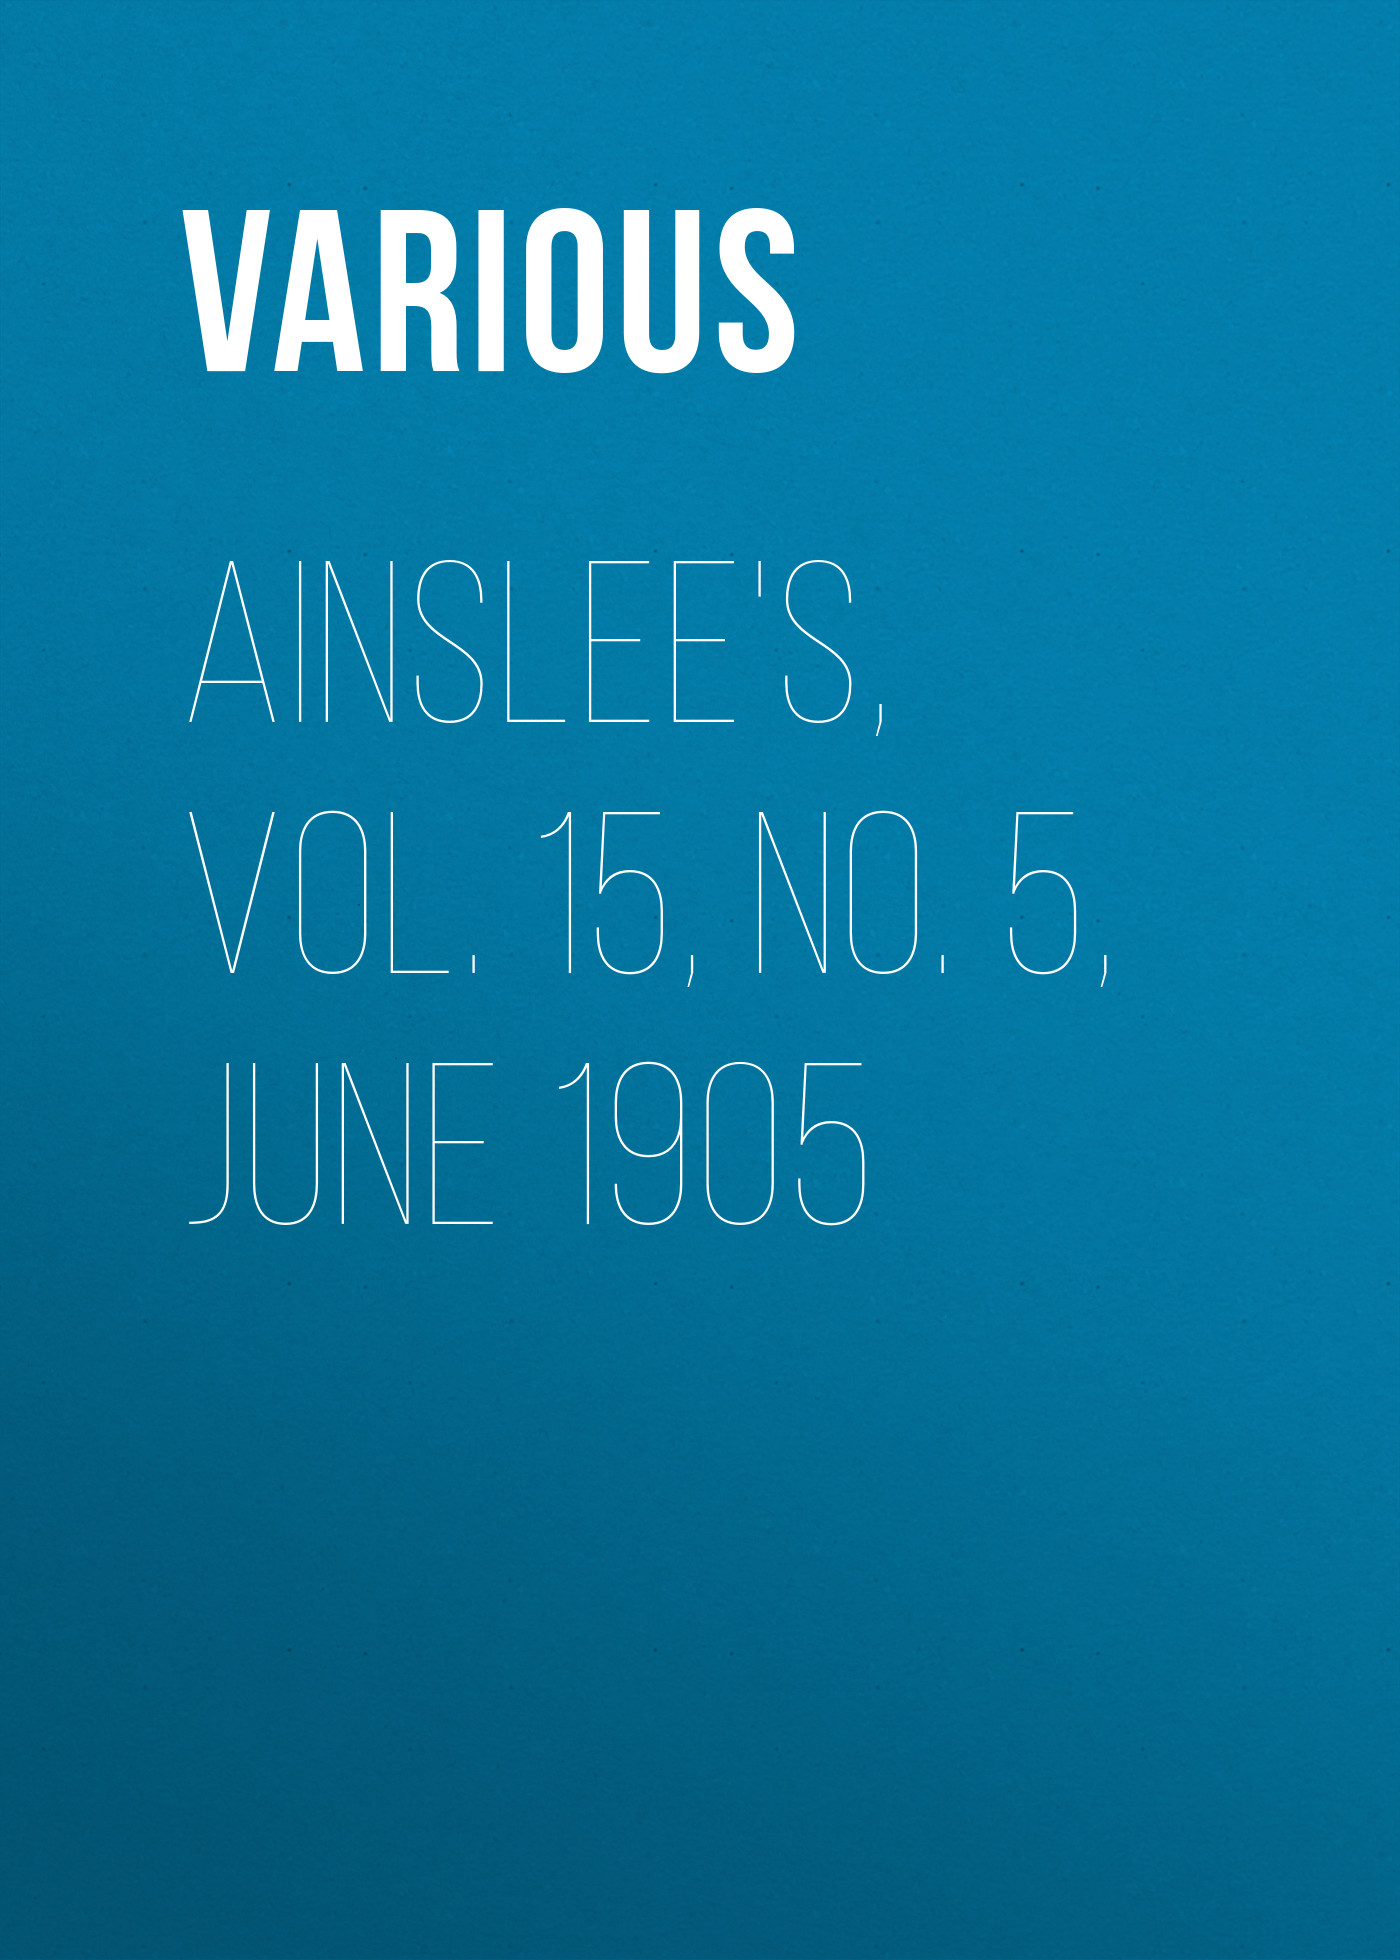 Книга Ainslee's, Vol. 15, No. 5, June 1905 из серии , созданная  Various, может относится к жанру Журналы, Литература 20 века, Поэзия, Зарубежные стихи. Стоимость электронной книги Ainslee's, Vol. 15, No. 5, June 1905 с идентификатором 25570383 составляет 0 руб.